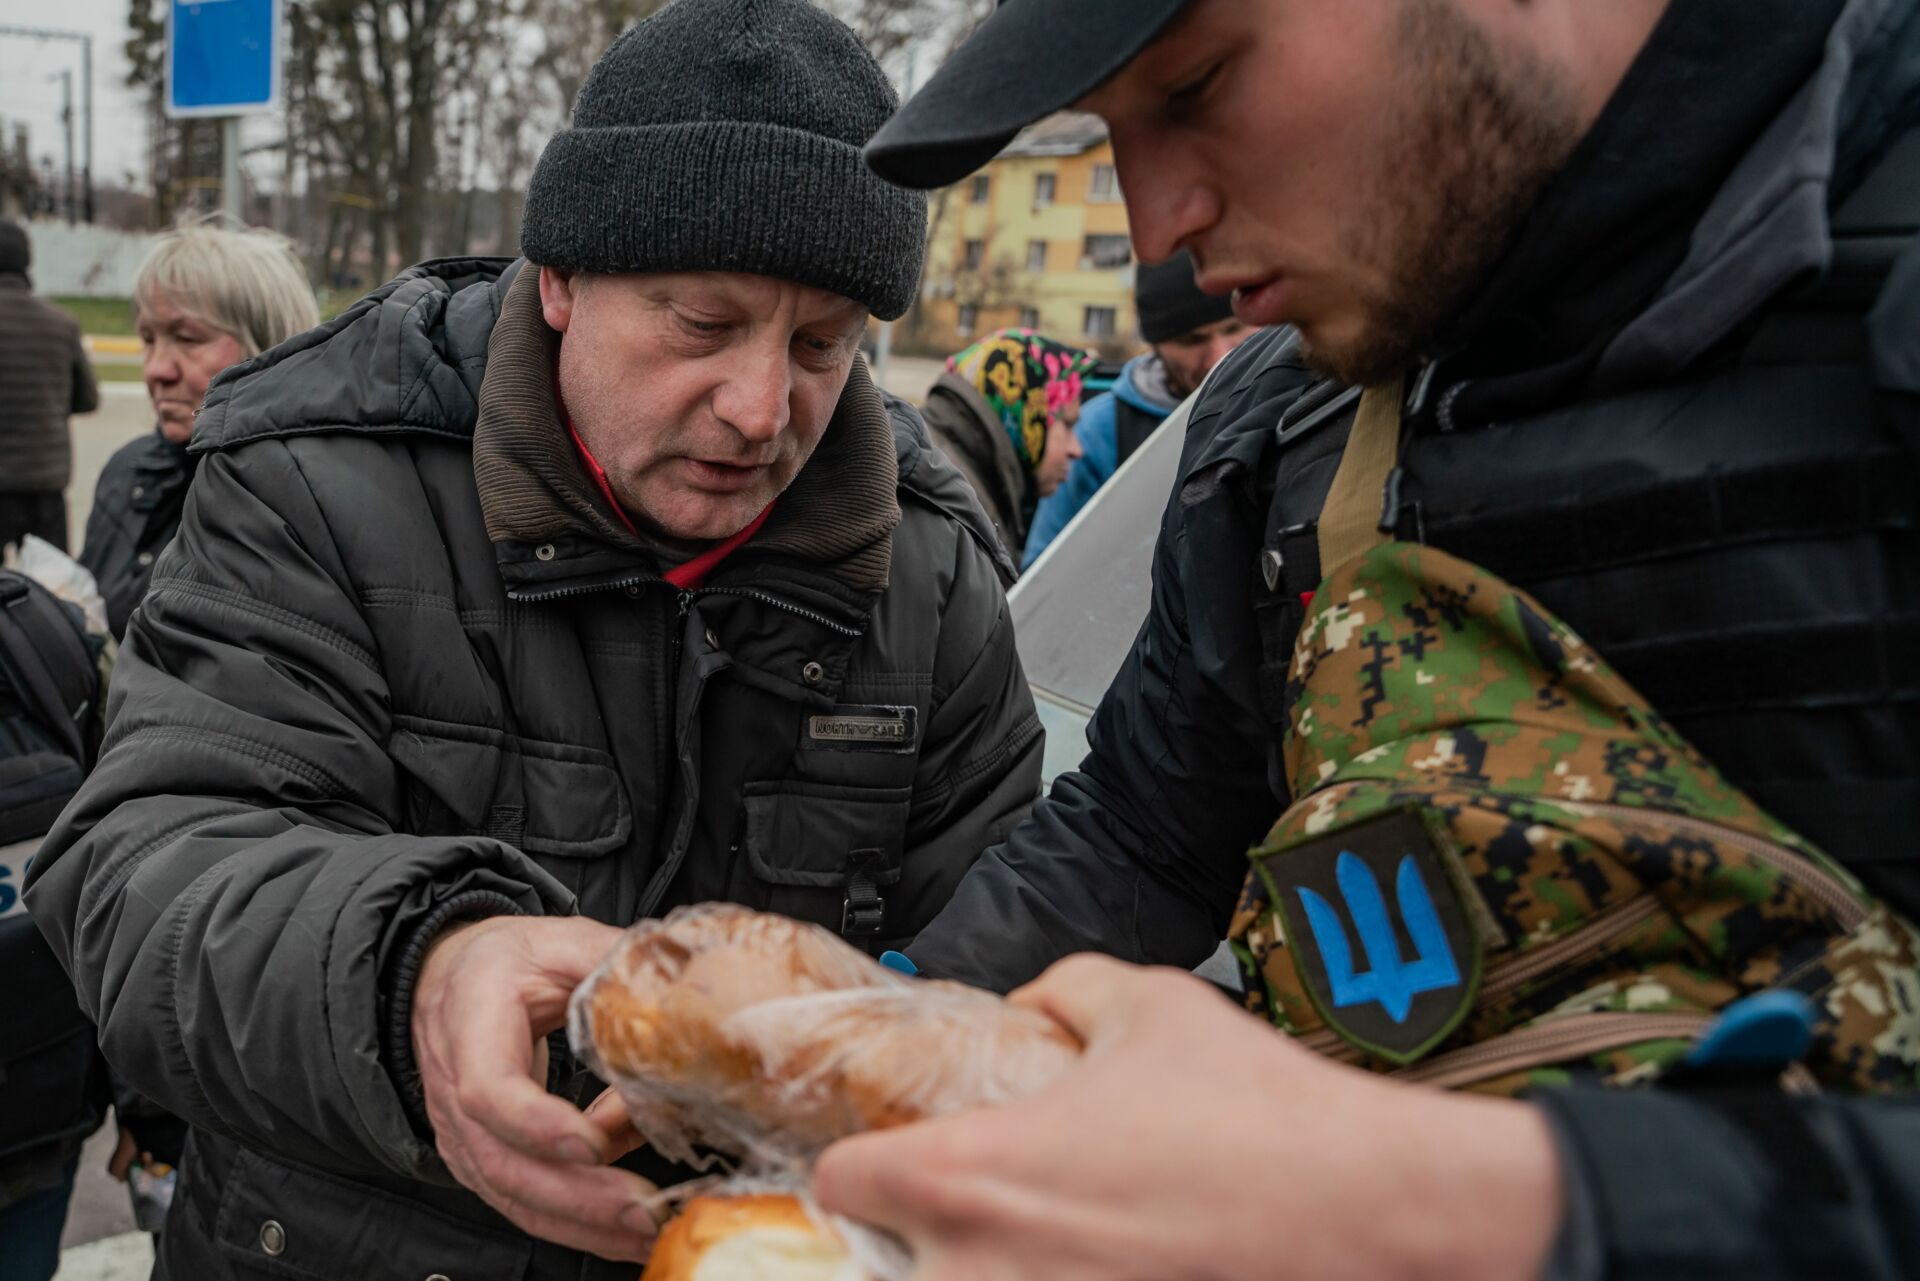 Wolontariusze rozdają chleb ocalałym z Buczy. Mieszkańcy mieszkają w piwnicach bez wody, elektryczności i komunikacji.